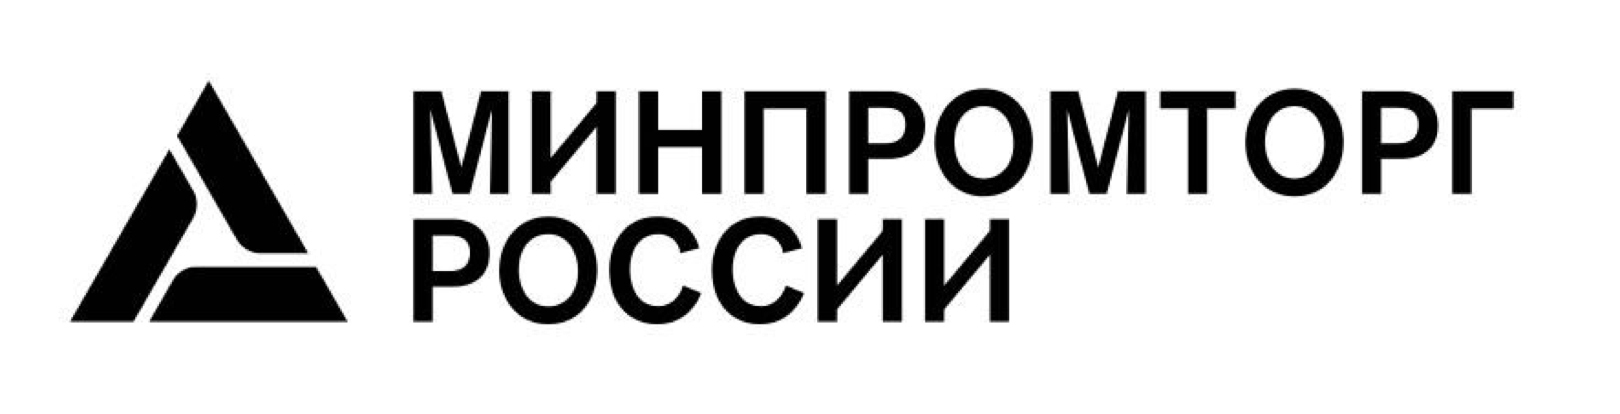 Организации минпромторга россии